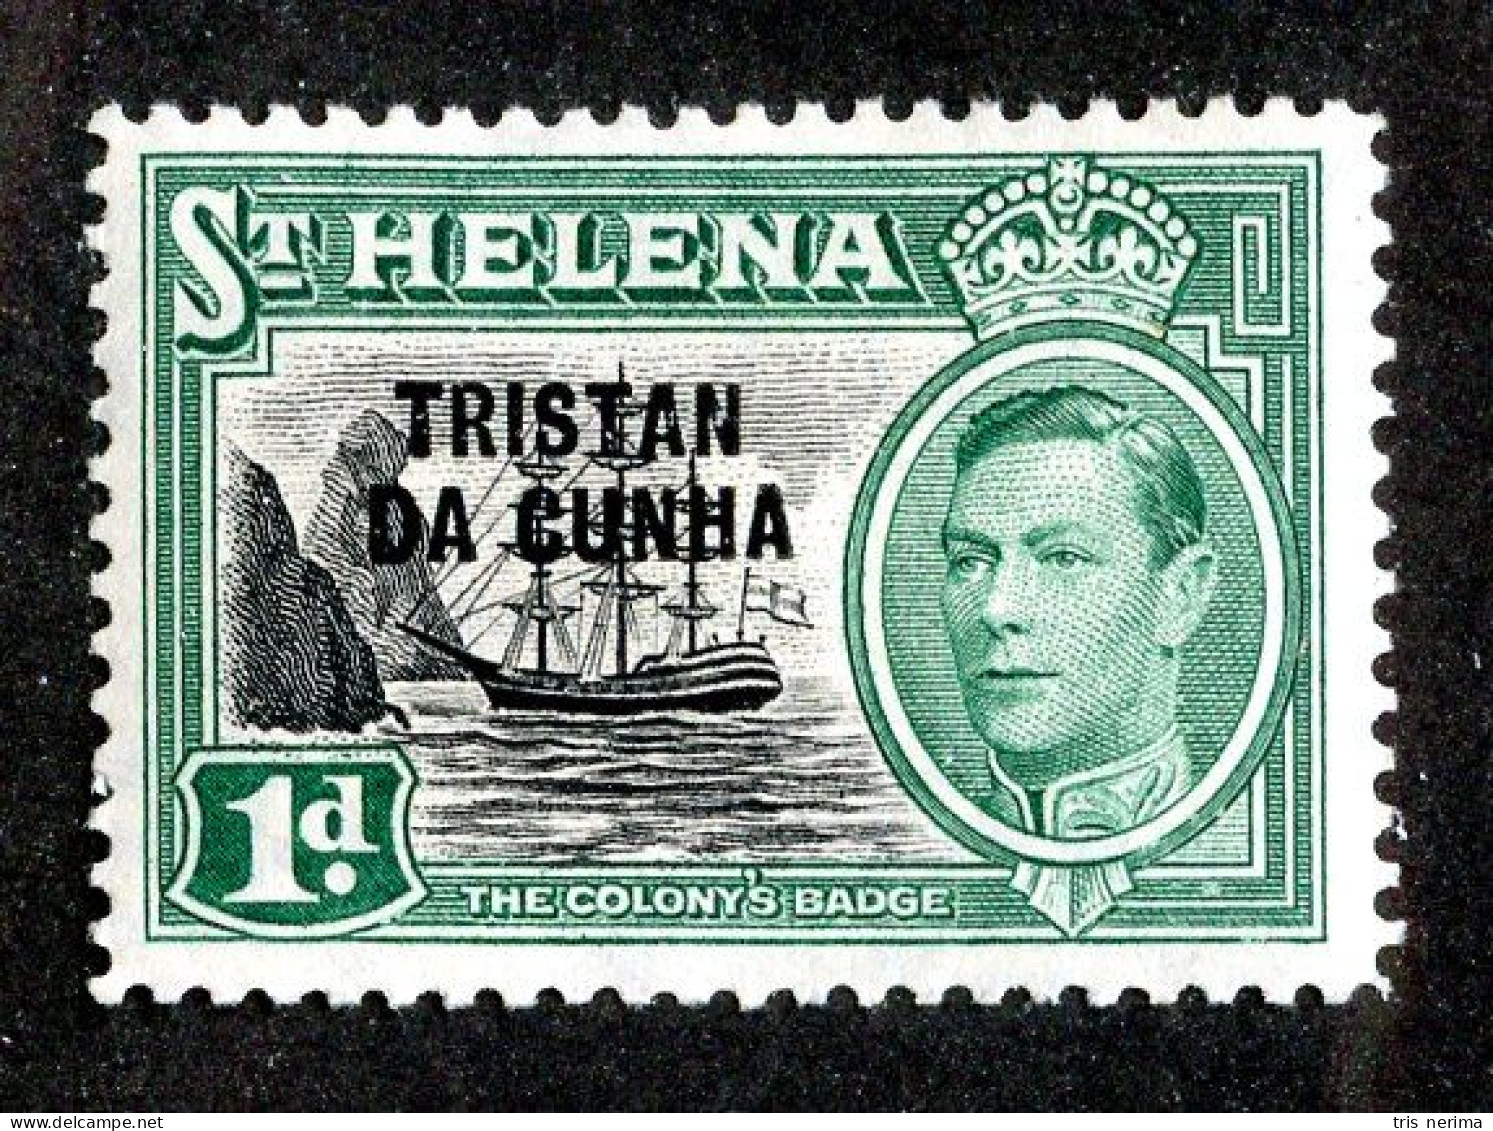 919 BCXX 1952 Tristan Scott #2 MLH (offers Welcome) - Tristan Da Cunha